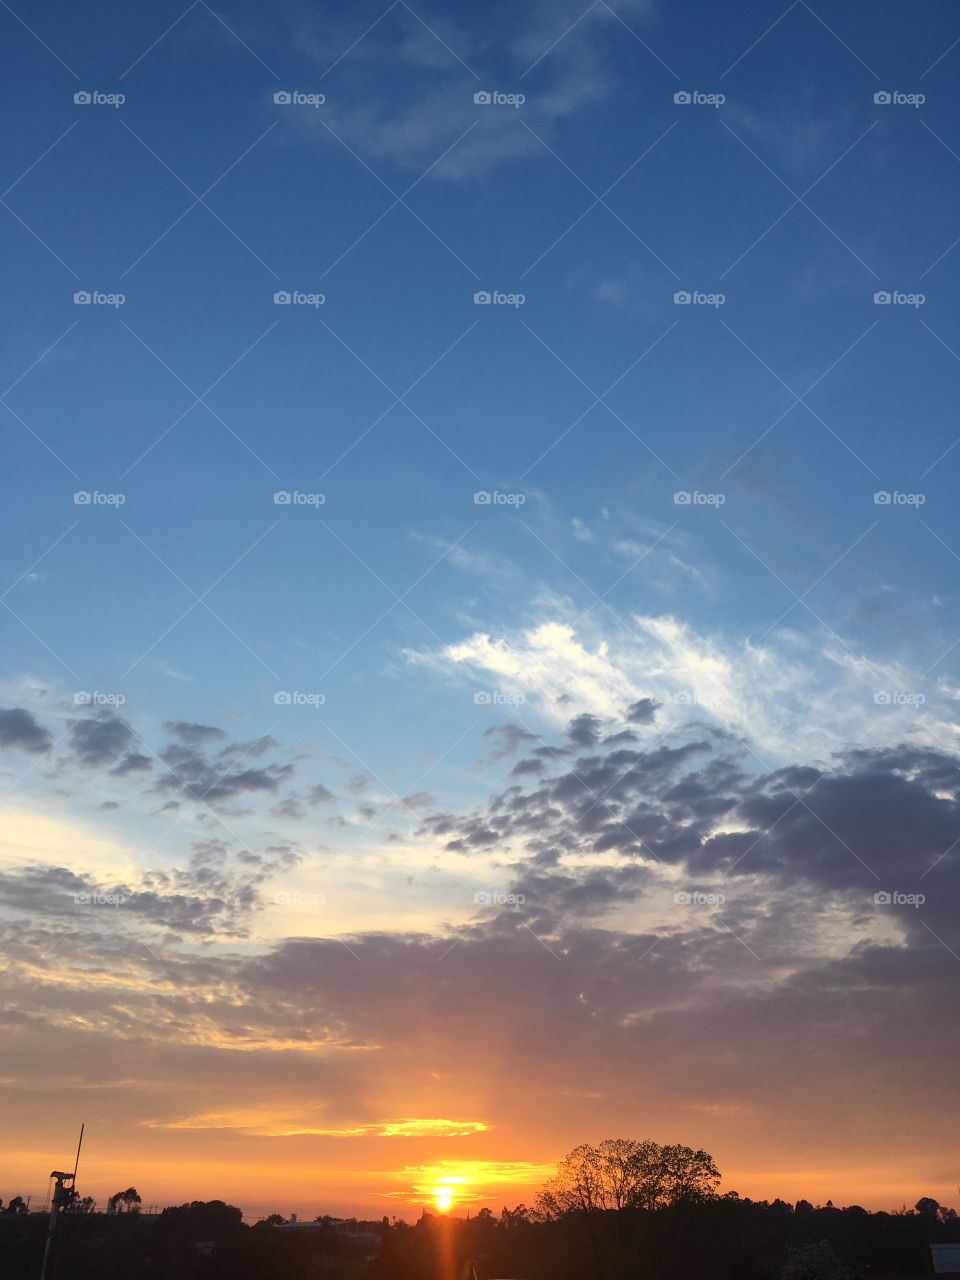 🌅Desperta, #Jundiaí!
O #amanhecer das 06h, #colorido e bonito!
🍃
#sol
#sun
#sky
#céu
#photo
#nature
#manhã
#morning
#alvorada
#natureza
#horizonte
#fotografia
#paisagem
#inspiração
#mobgraphy
#FotografeiEmJundiaí